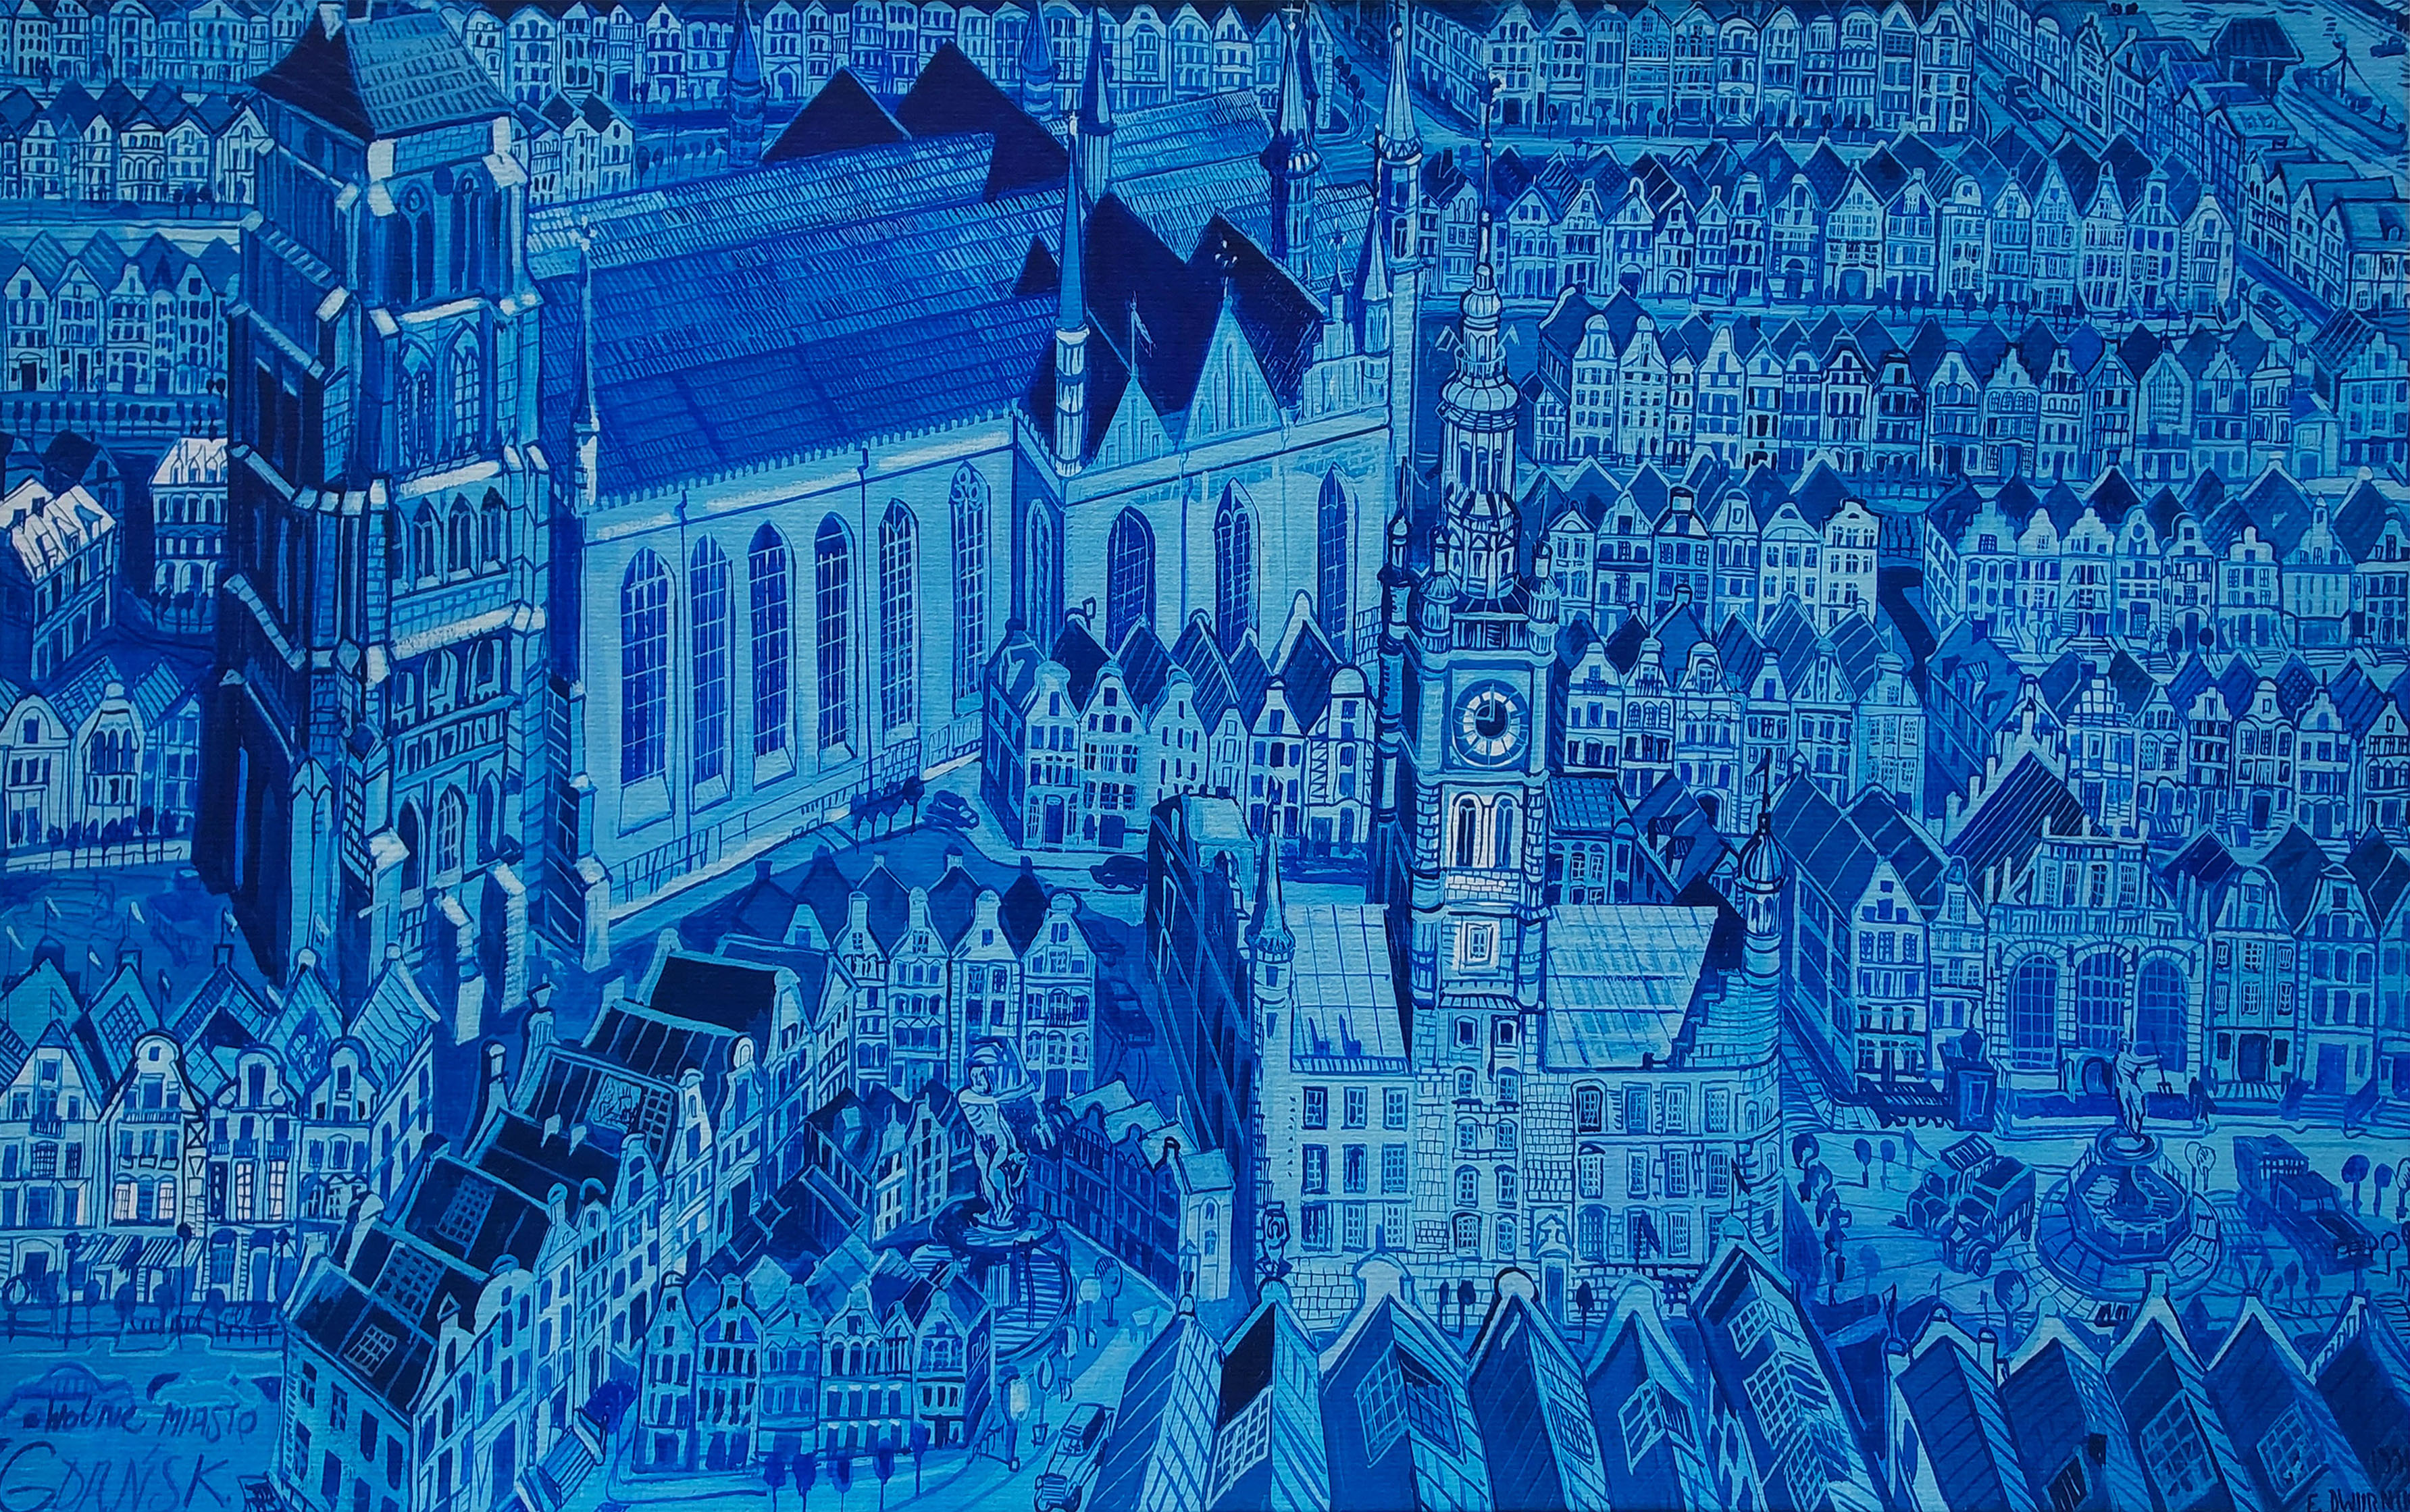 Wolne Miasto Gdańsk (ed.41/100) — Edward Dwurnik